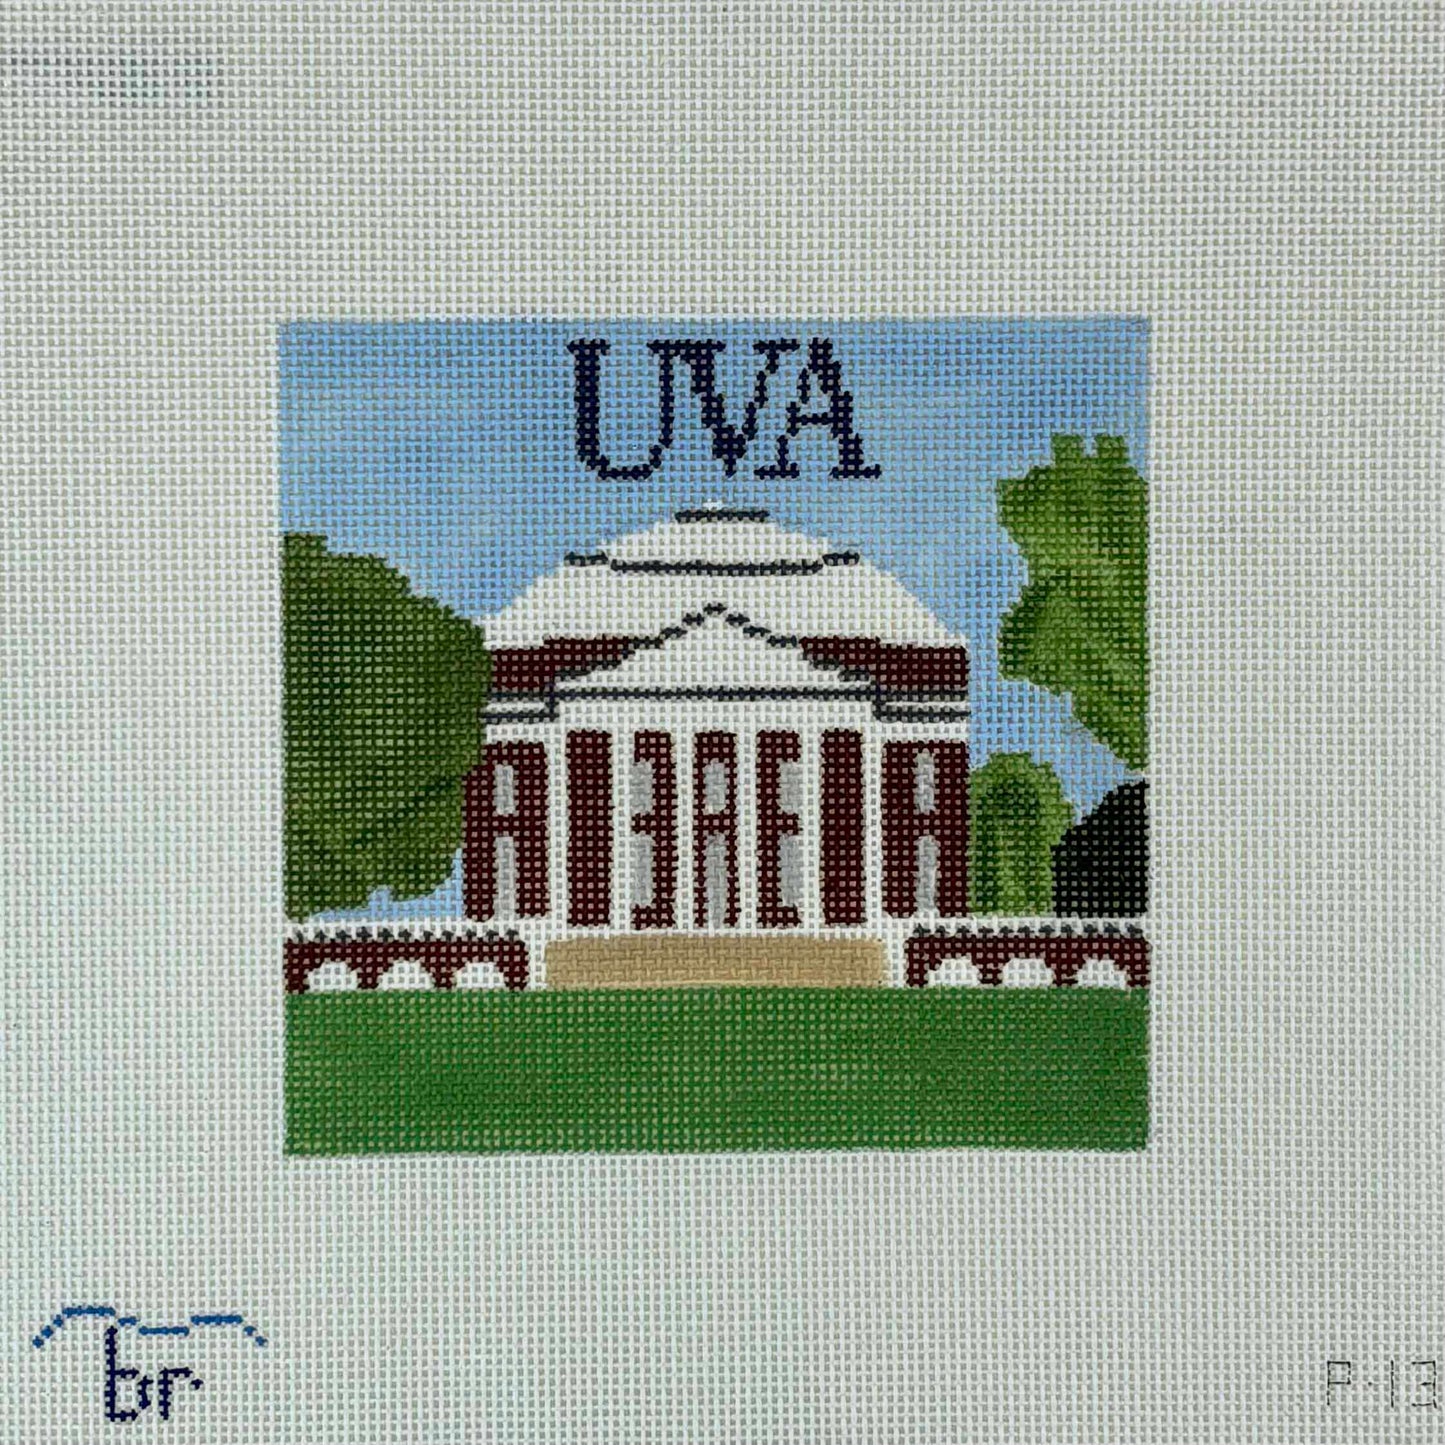 University of Virginia Rotunda - Square